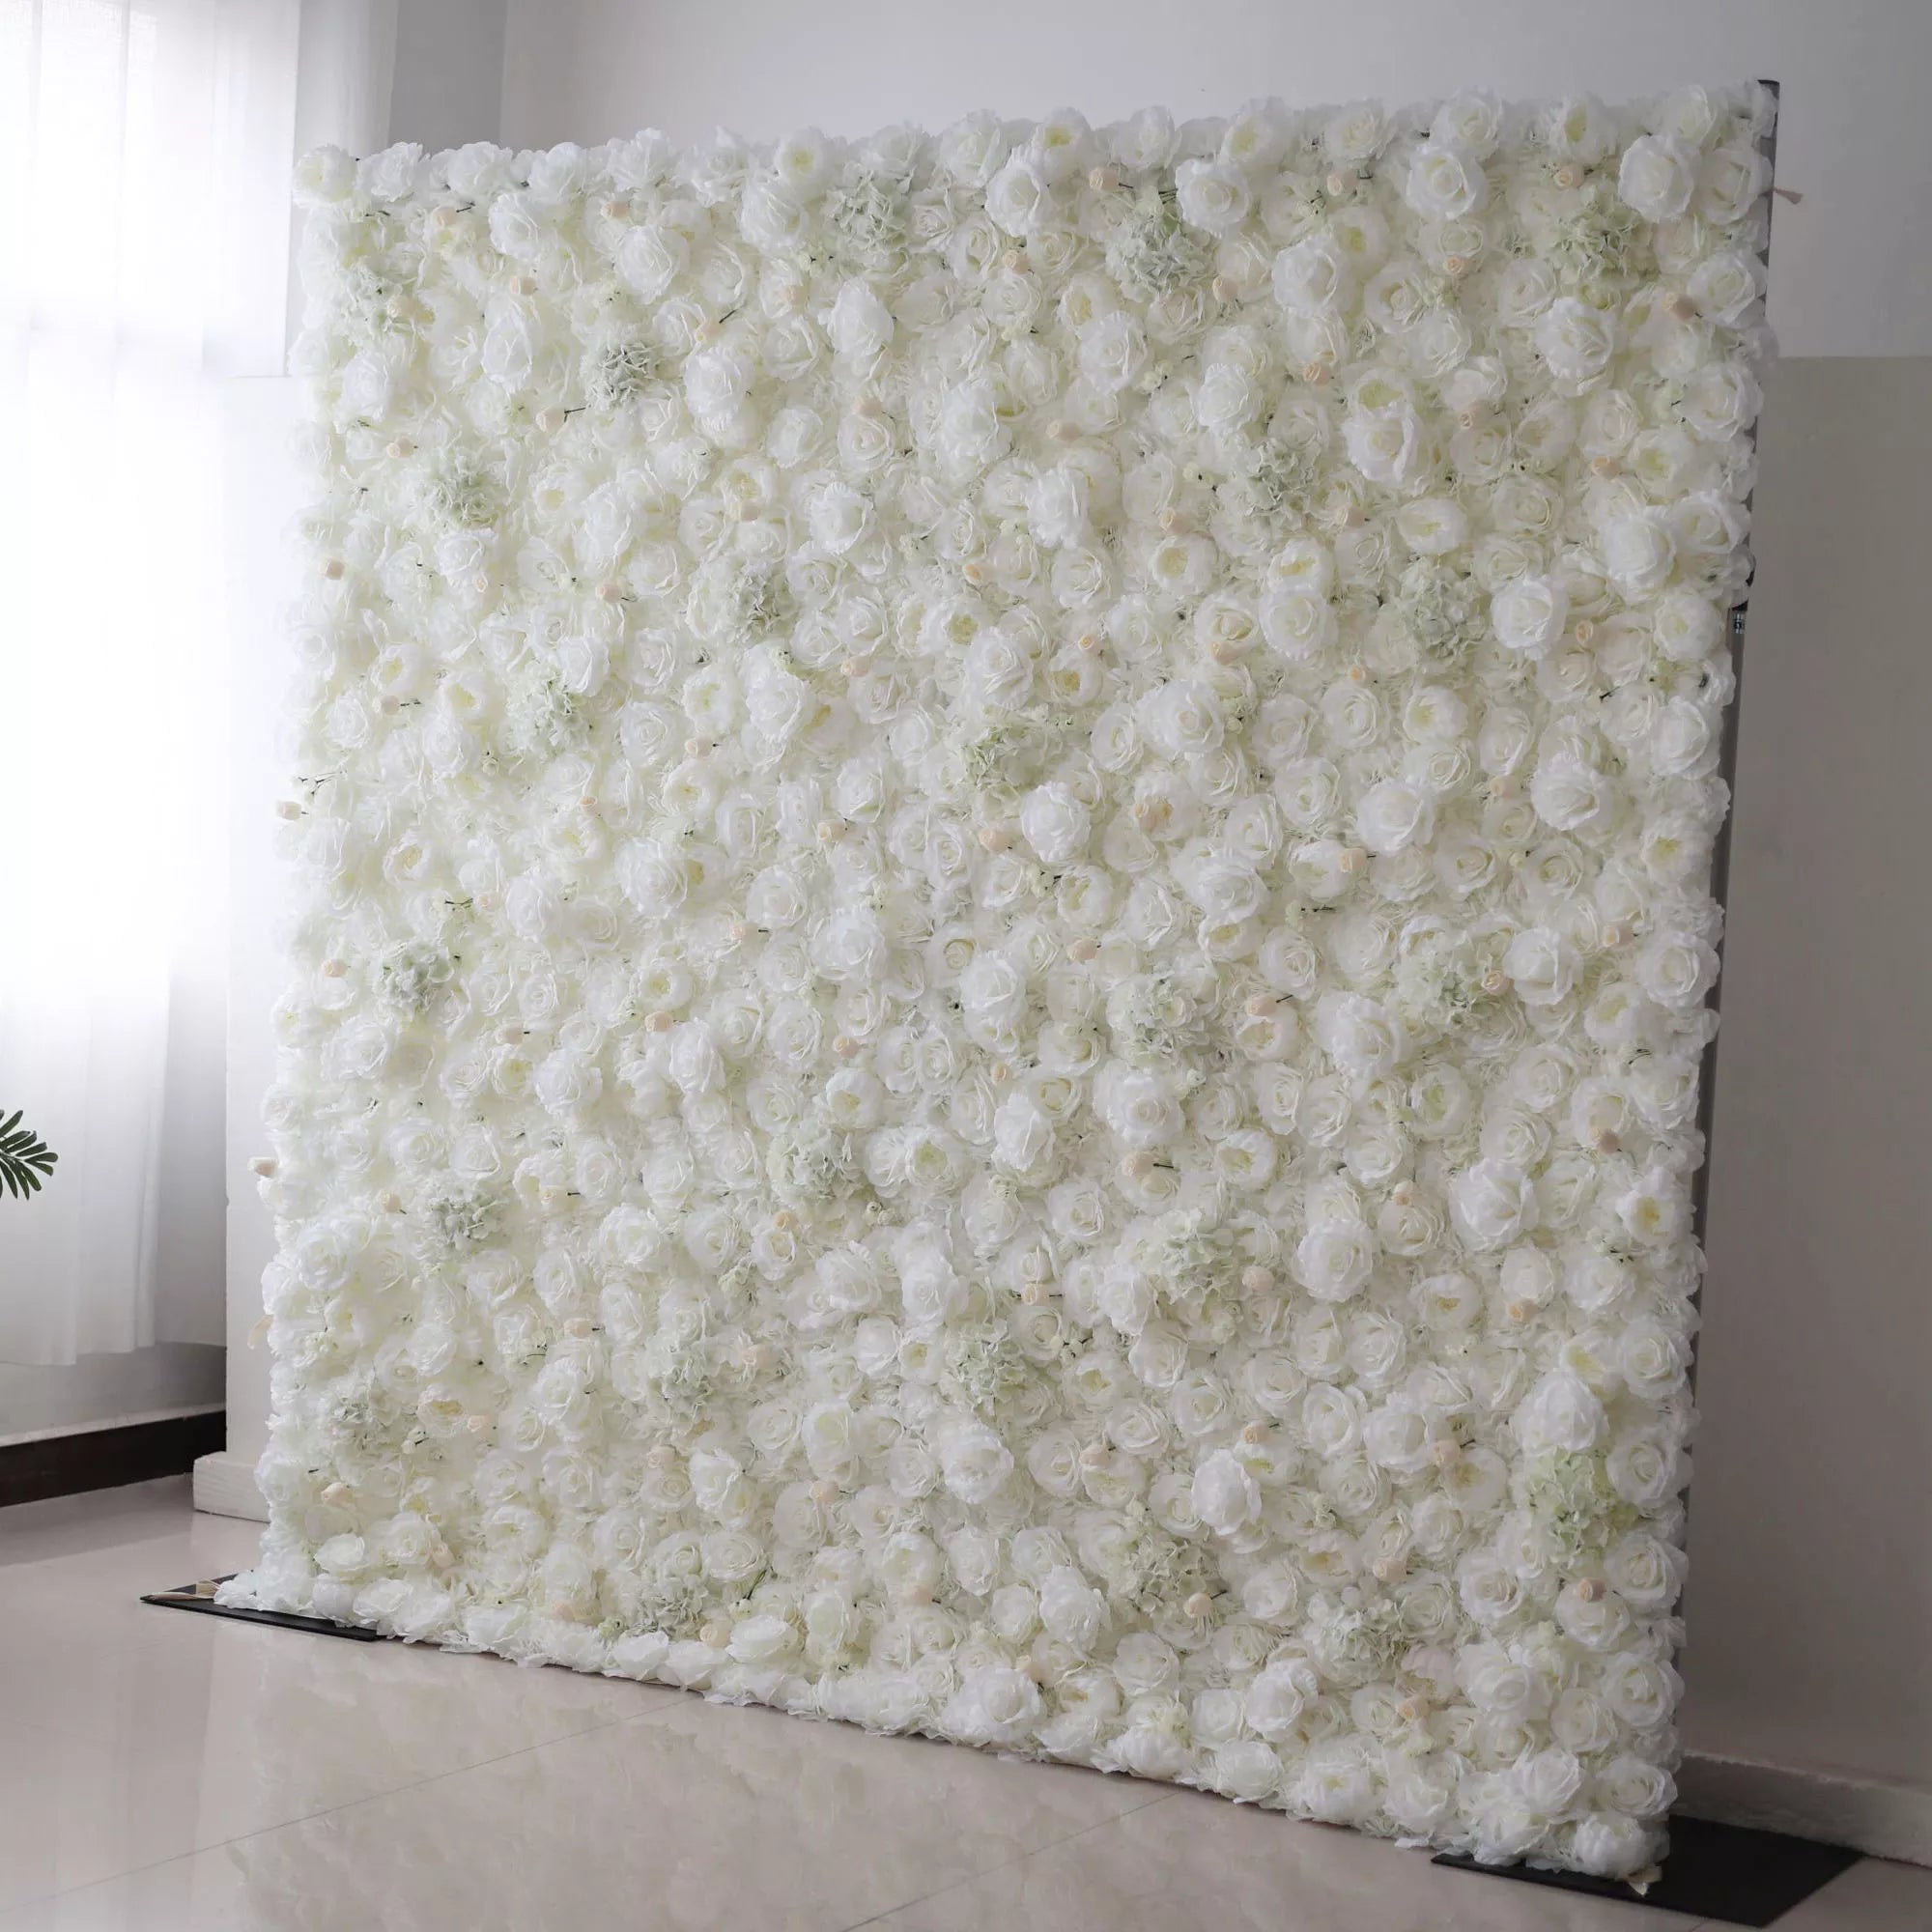 زهرة فالار قماش صناعي نقي أبيض خلفية جدار زهور الزفاف ، ديكور حفلات زهور ، حدث